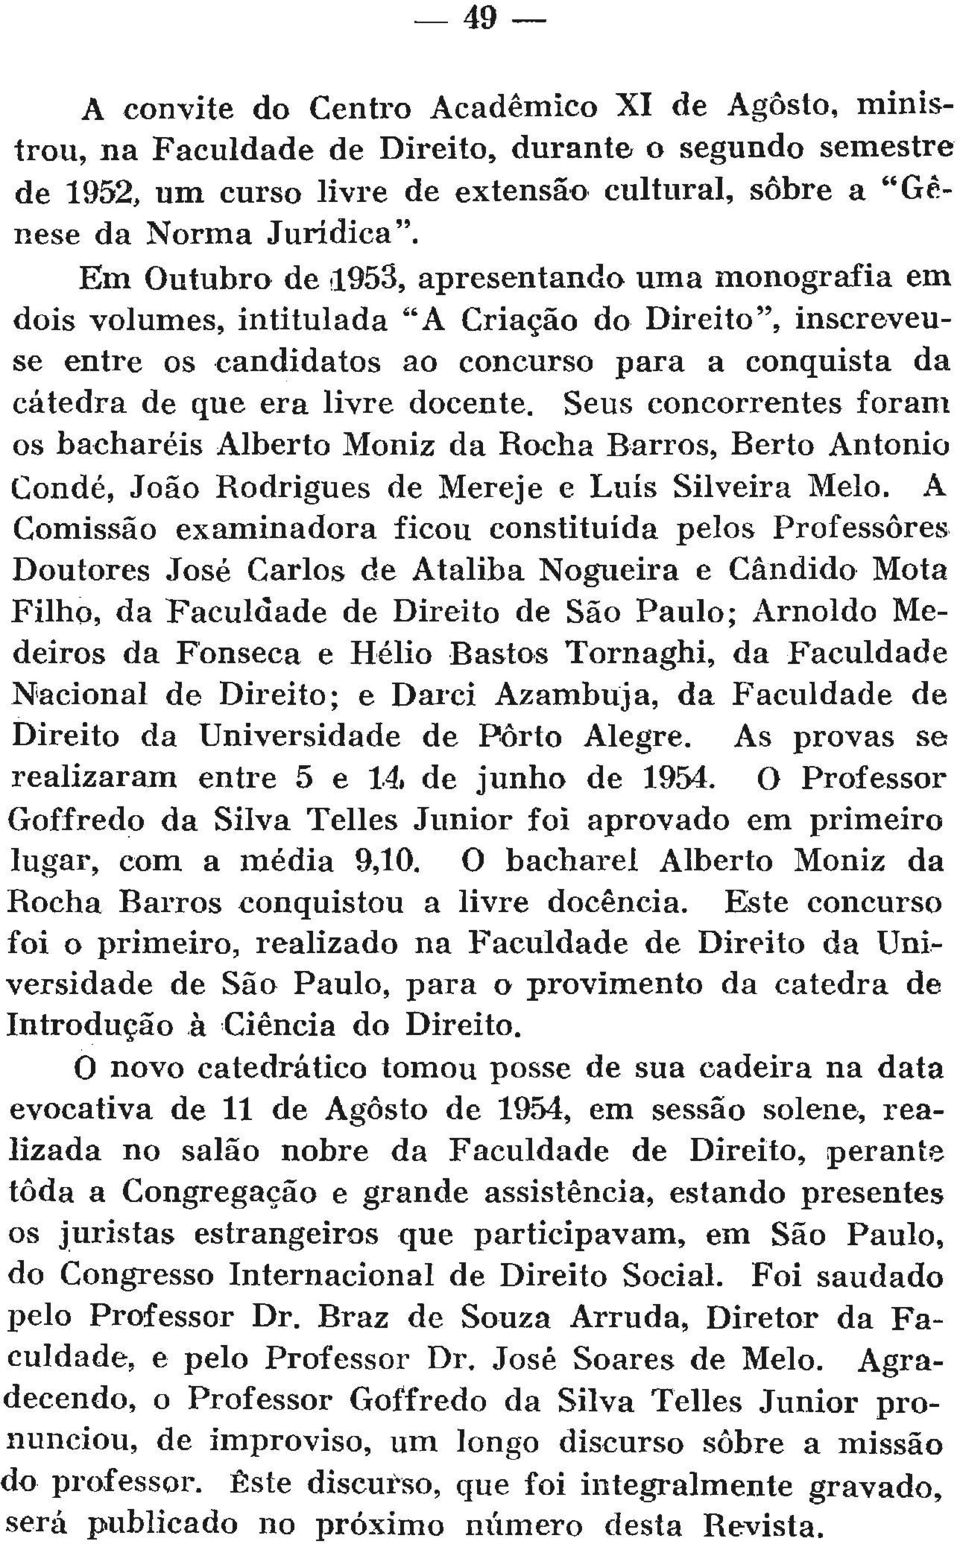 Seus concorrentes foram os bacharéis Alberto Moniz da Rocha Barros, Rerto Antônio Conde, João Rodrigues de Mereje e Luís Silveira Melo.